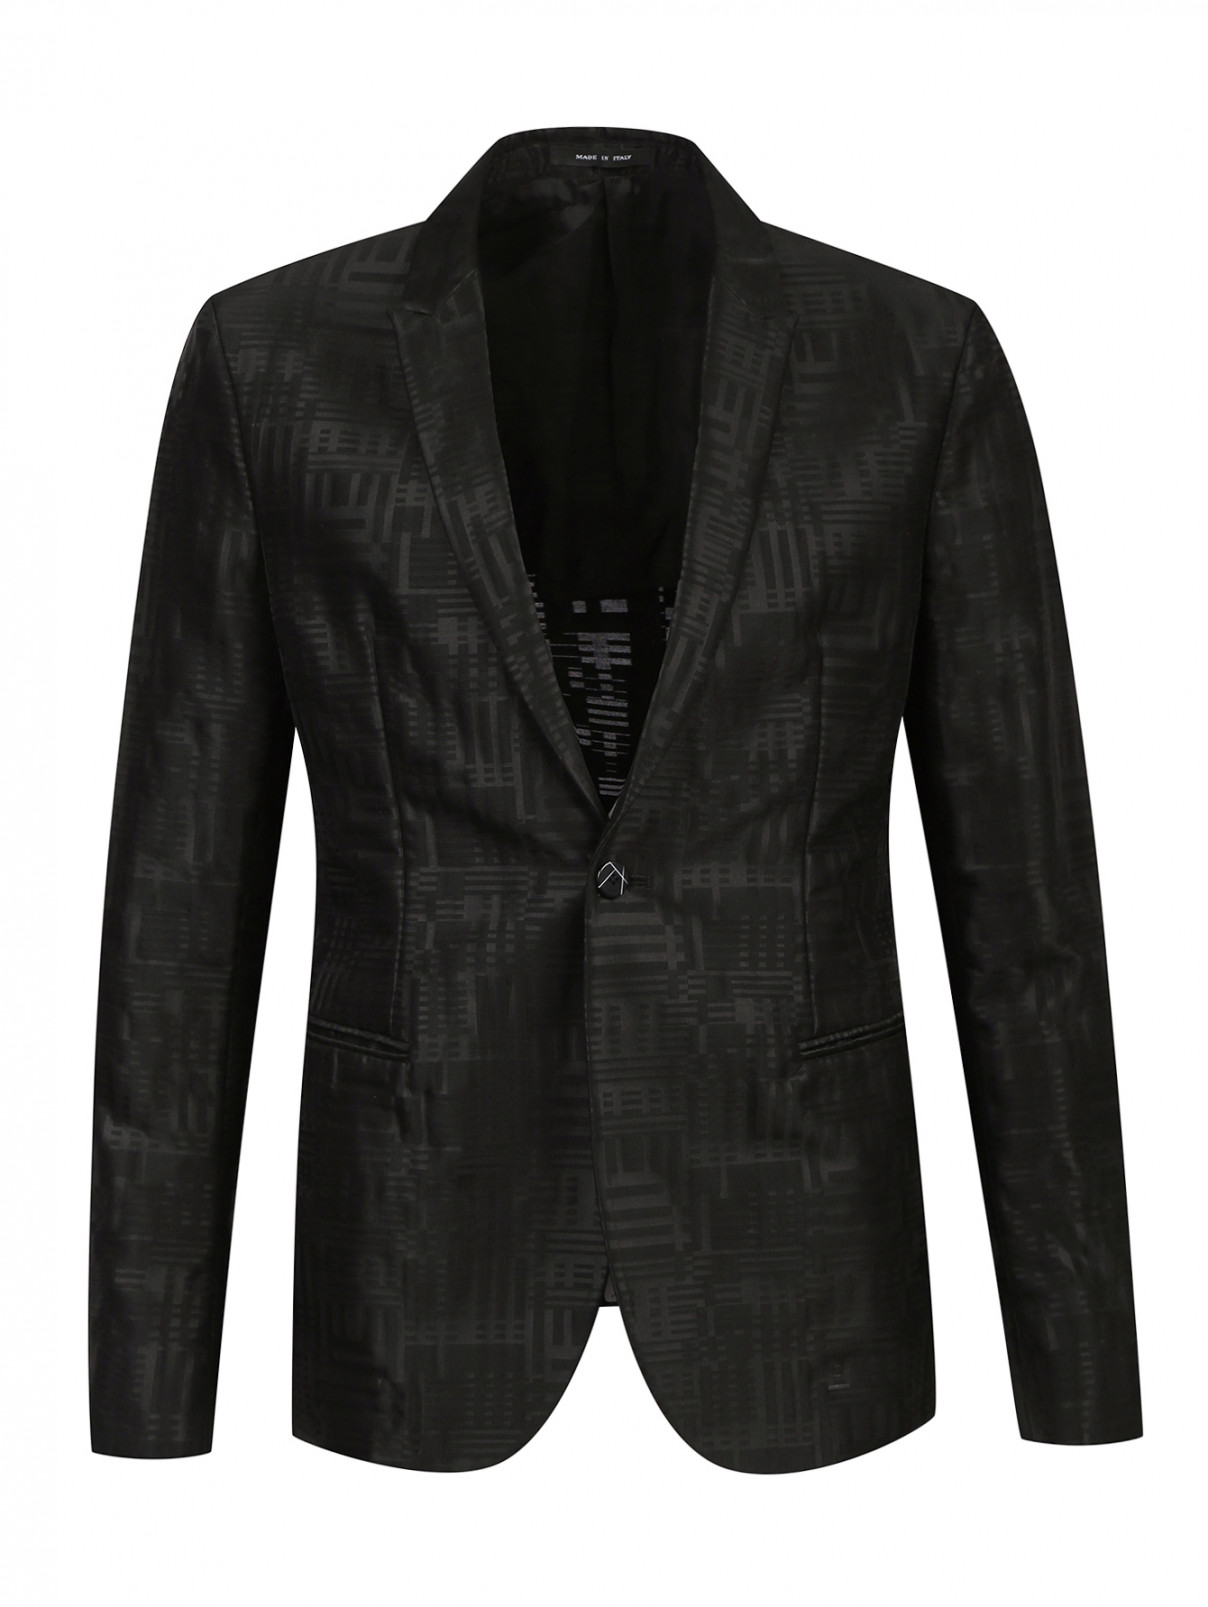 Легкий пиджак из шерсти с узором Emporio Armani  –  Общий вид  – Цвет:  Черный